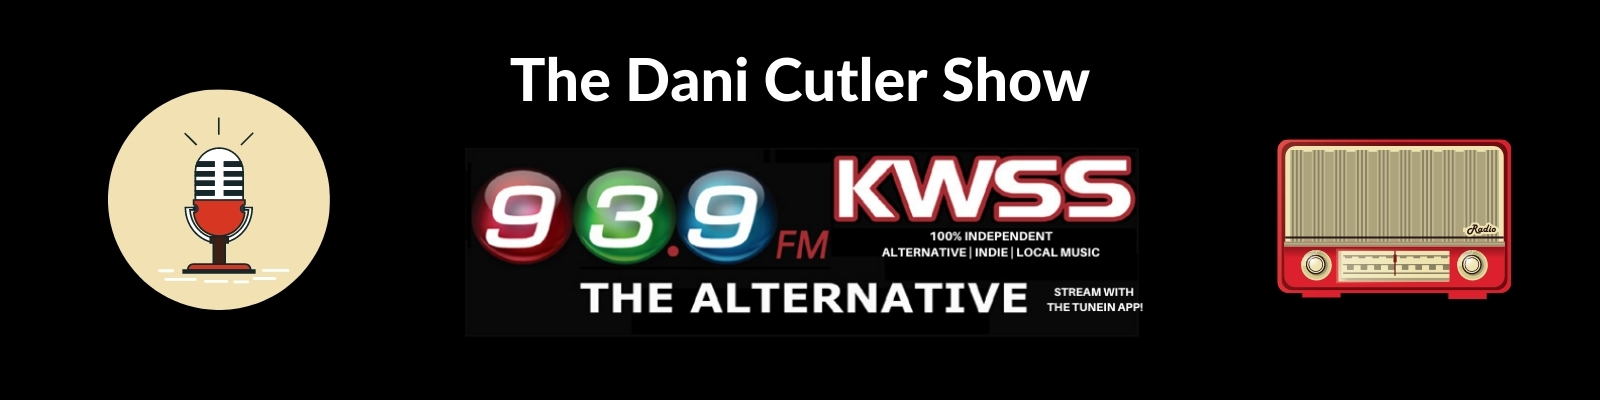 The Dani Cutler Show KWSS 93.9fm